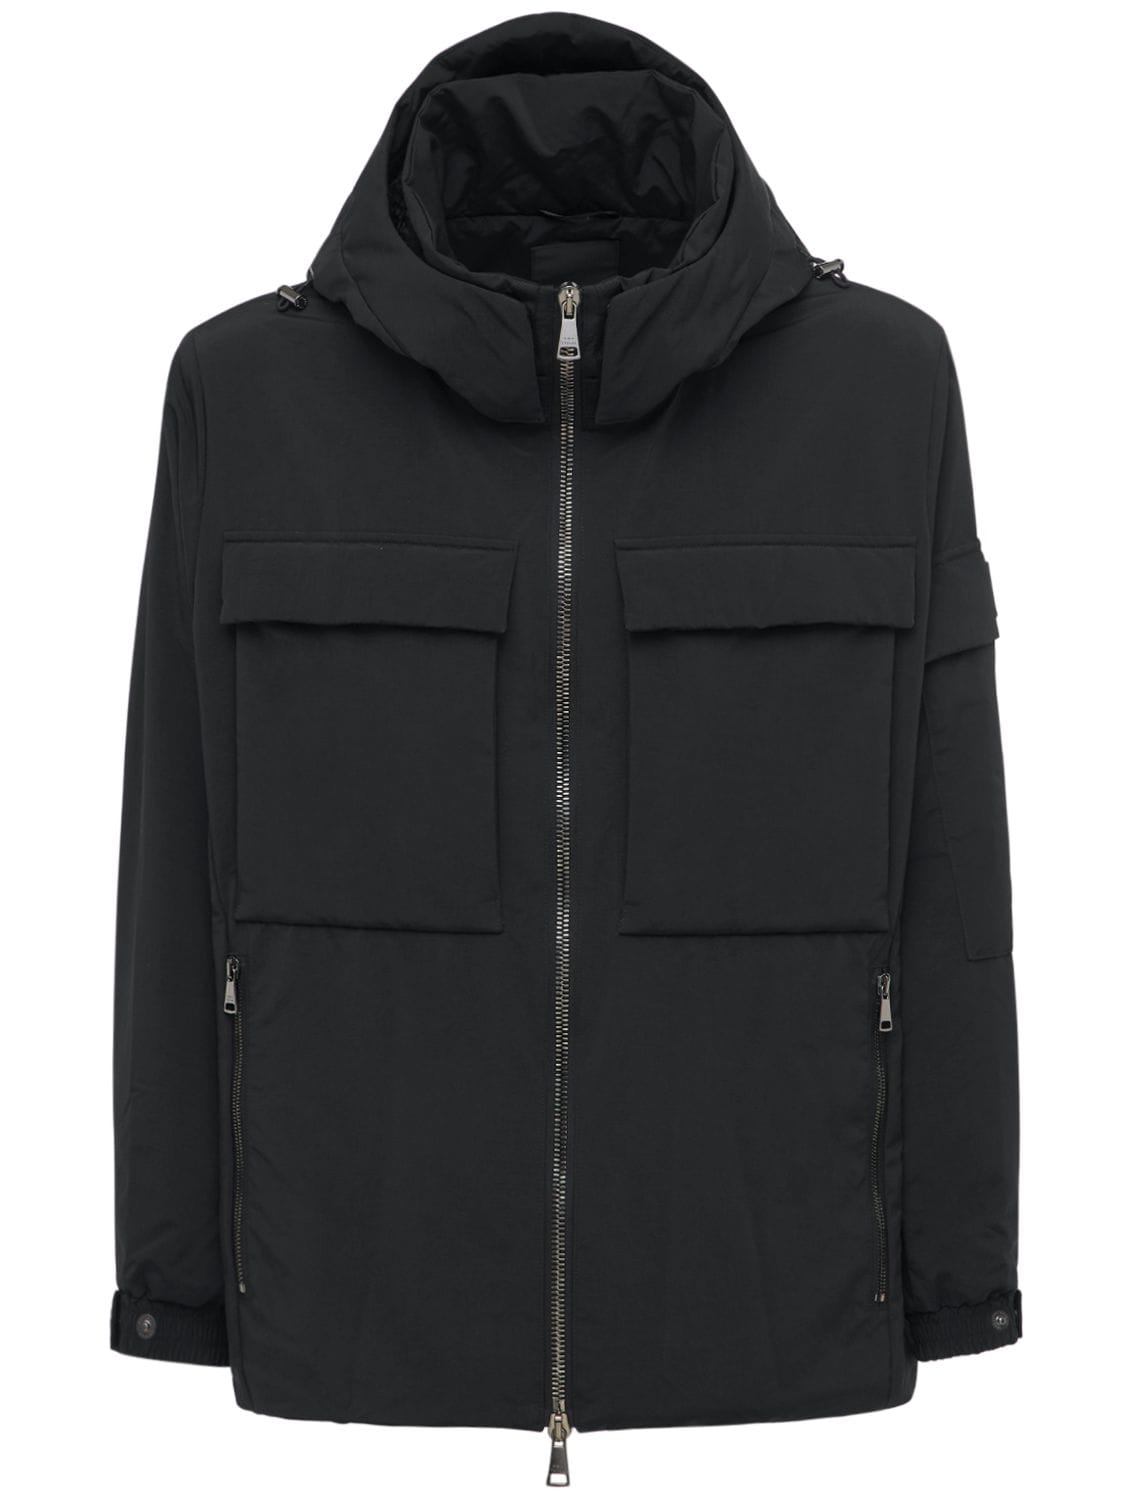 Tatras - Klim hooded lightweight nylon jacket - Black | Luisaviaroma